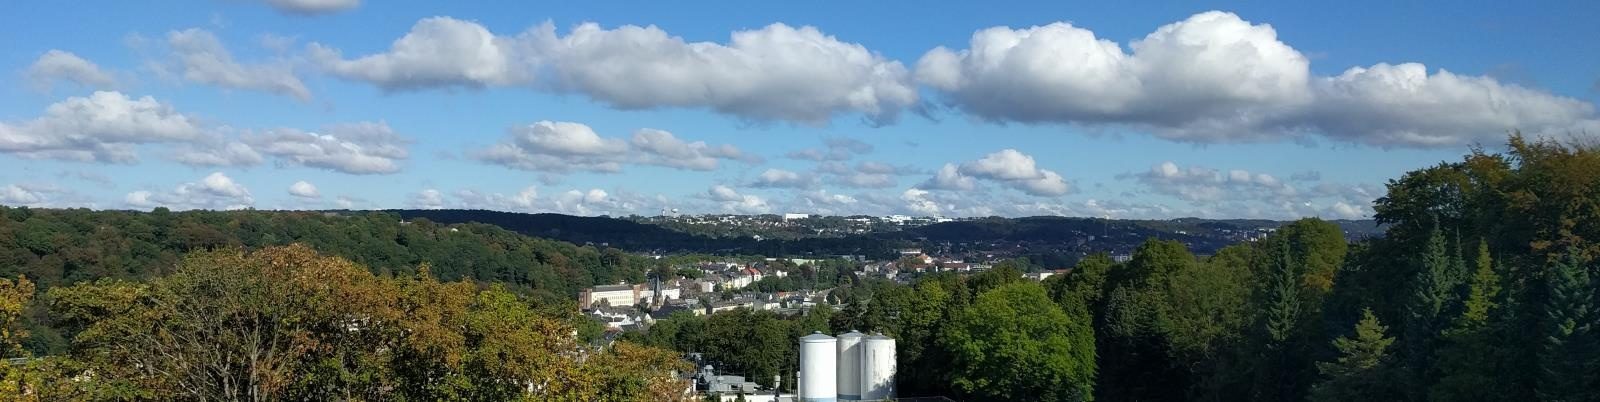 Axalta Wuppertal - Blick von Werk 1 nach Werk 2